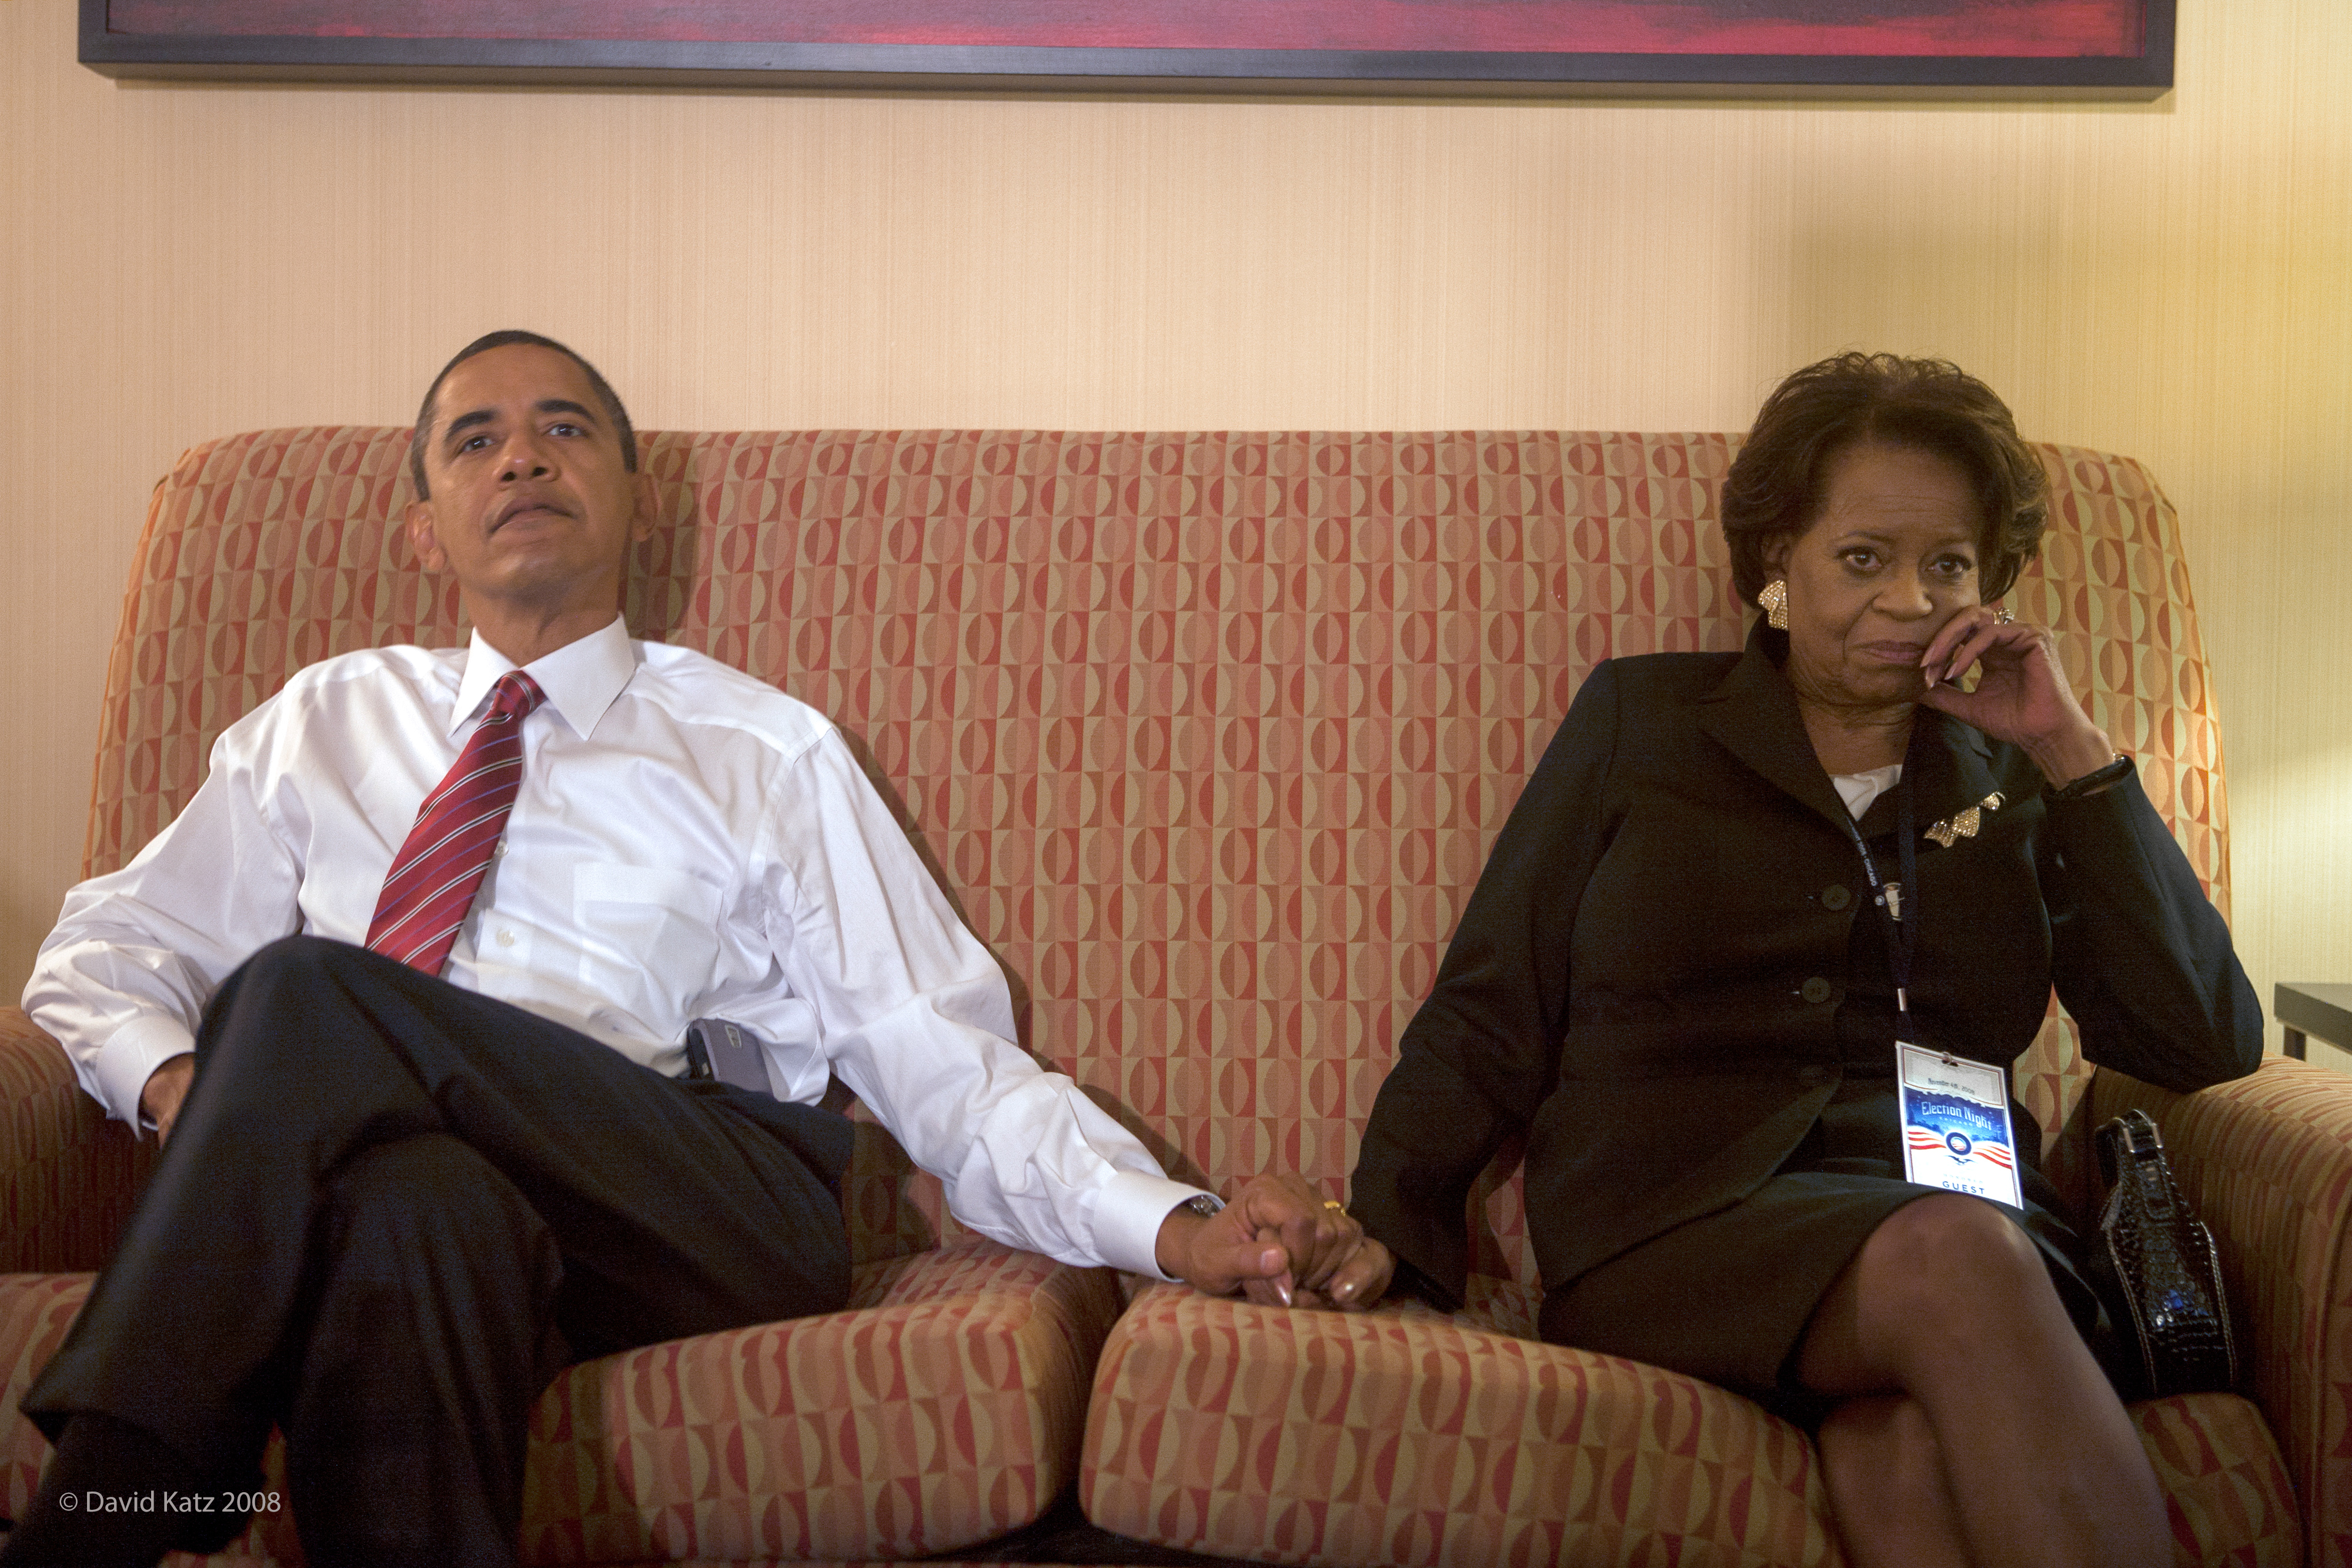 Marian shields robinson. Мэриан Шилдс Робинсон. Барак Обама и его мать. Родители Барака Обамы.